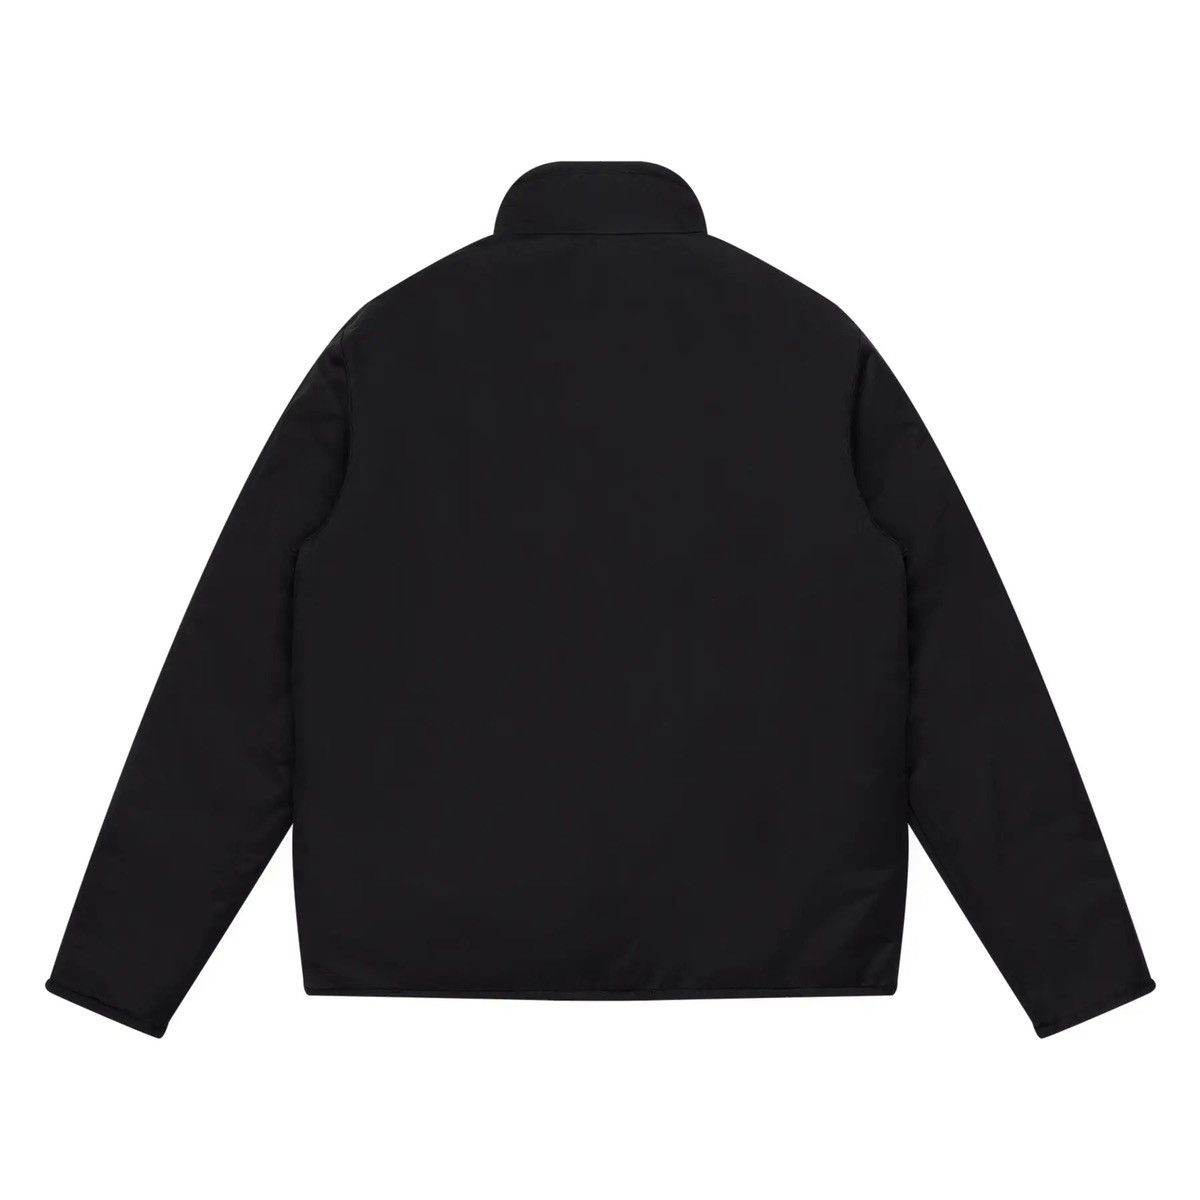 Knickerbocker Mfg Co Knickerbocker Reversible Pile Jacket Brand New Size L Size US L / EU 52-54 / 3 - 2 Preview